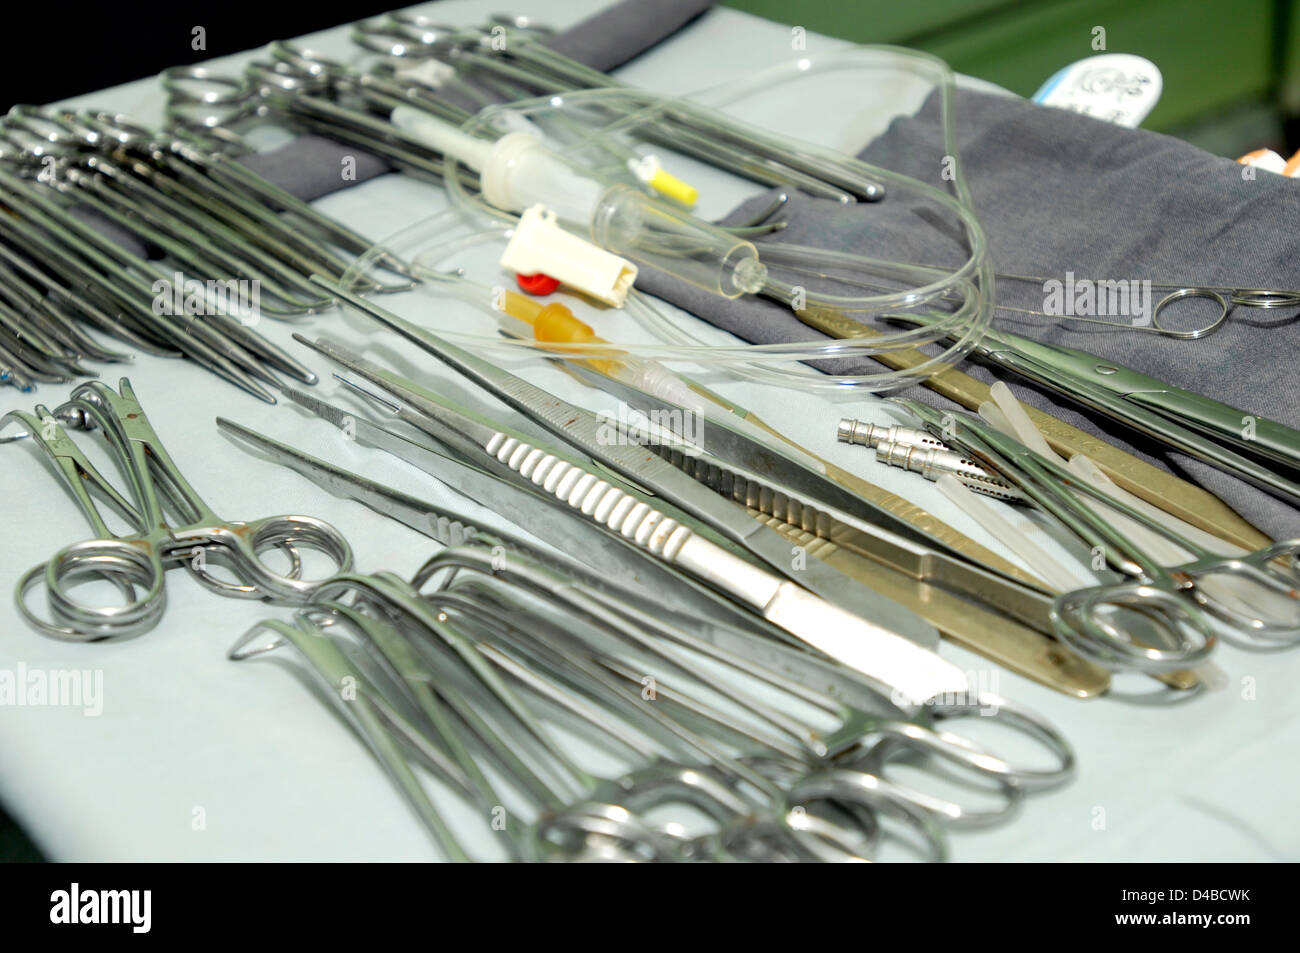 Les instruments chirurgicaux préparés pour l'intervention avec l'ensemble de perfusion. Le Soudan, l'Afrique. Banque D'Images